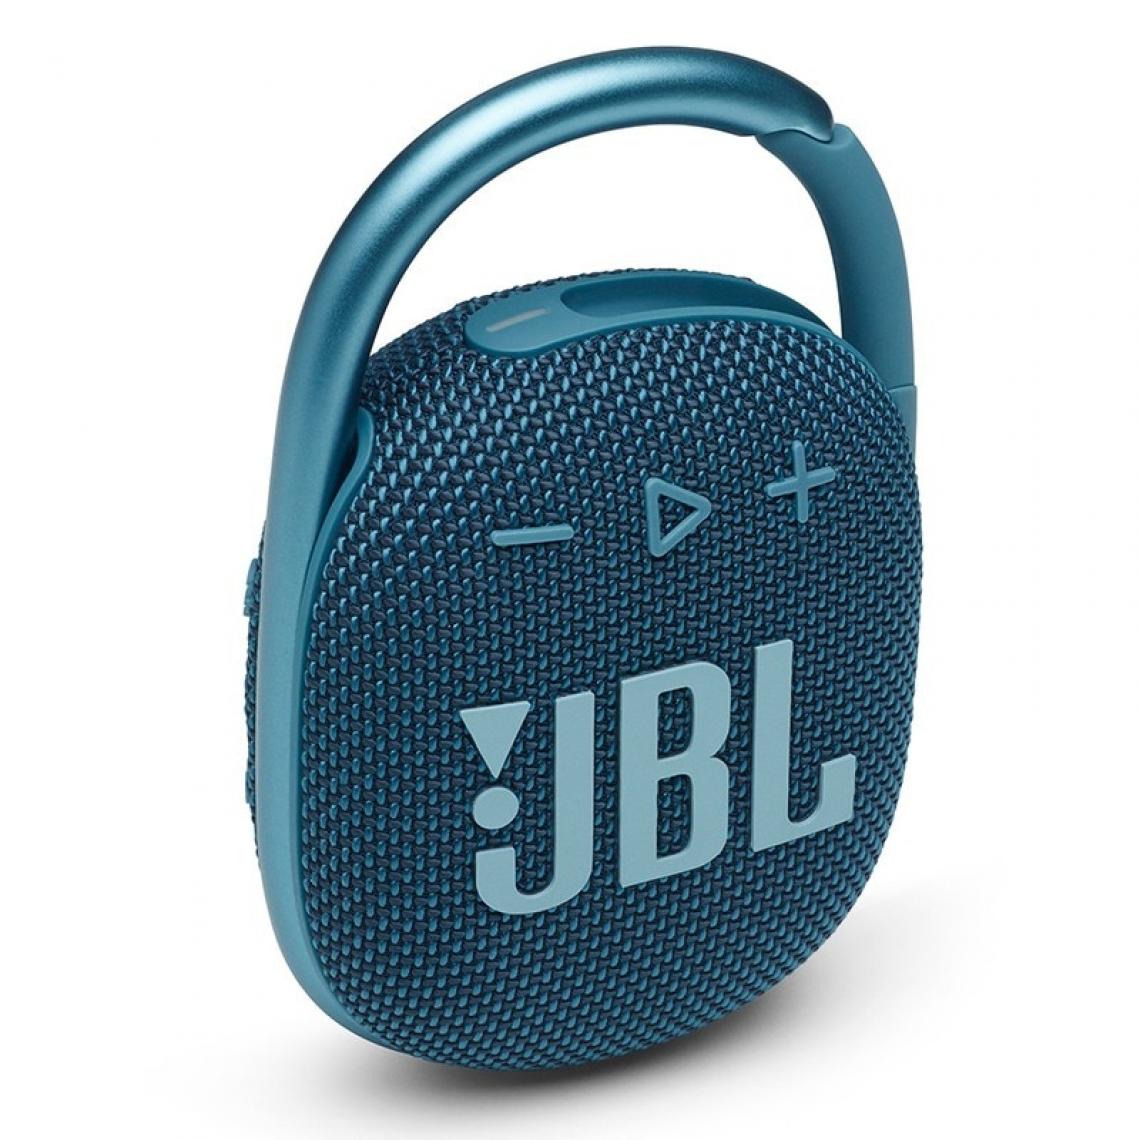 Universal - Haut-parleur portable Bluetooth subwoofer haut-parleur extérieur mini haut-parleur IP67 étanche à la poussière et à l'eau(Bleu) - Hauts-parleurs